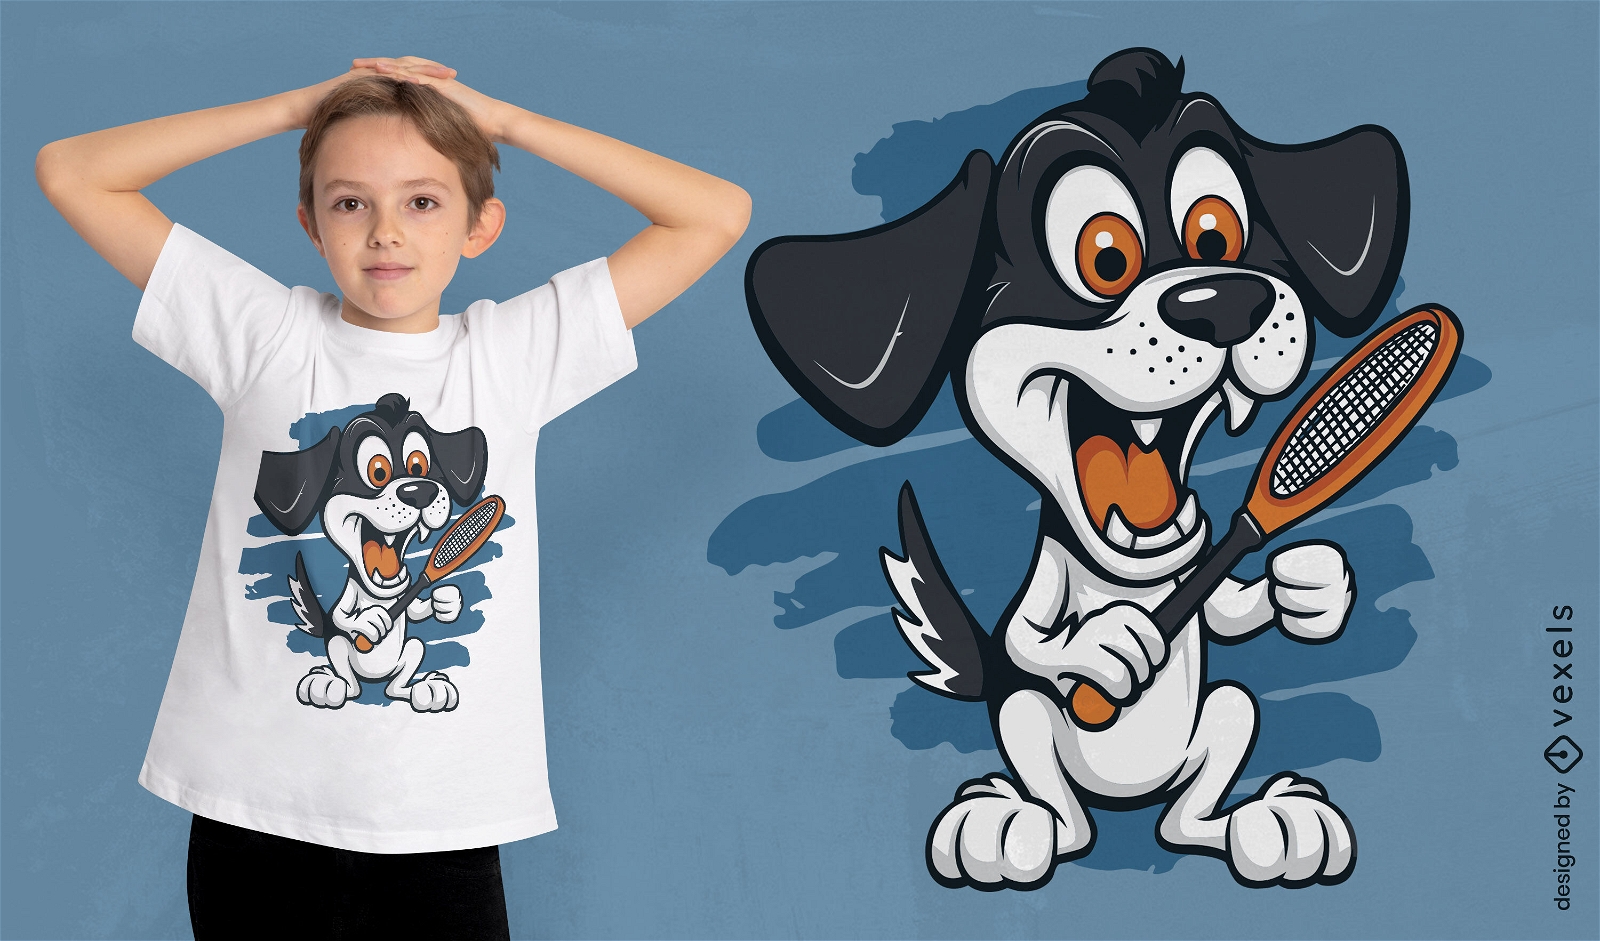 Cachorro segurando o design da camiseta da raquete de t?nis